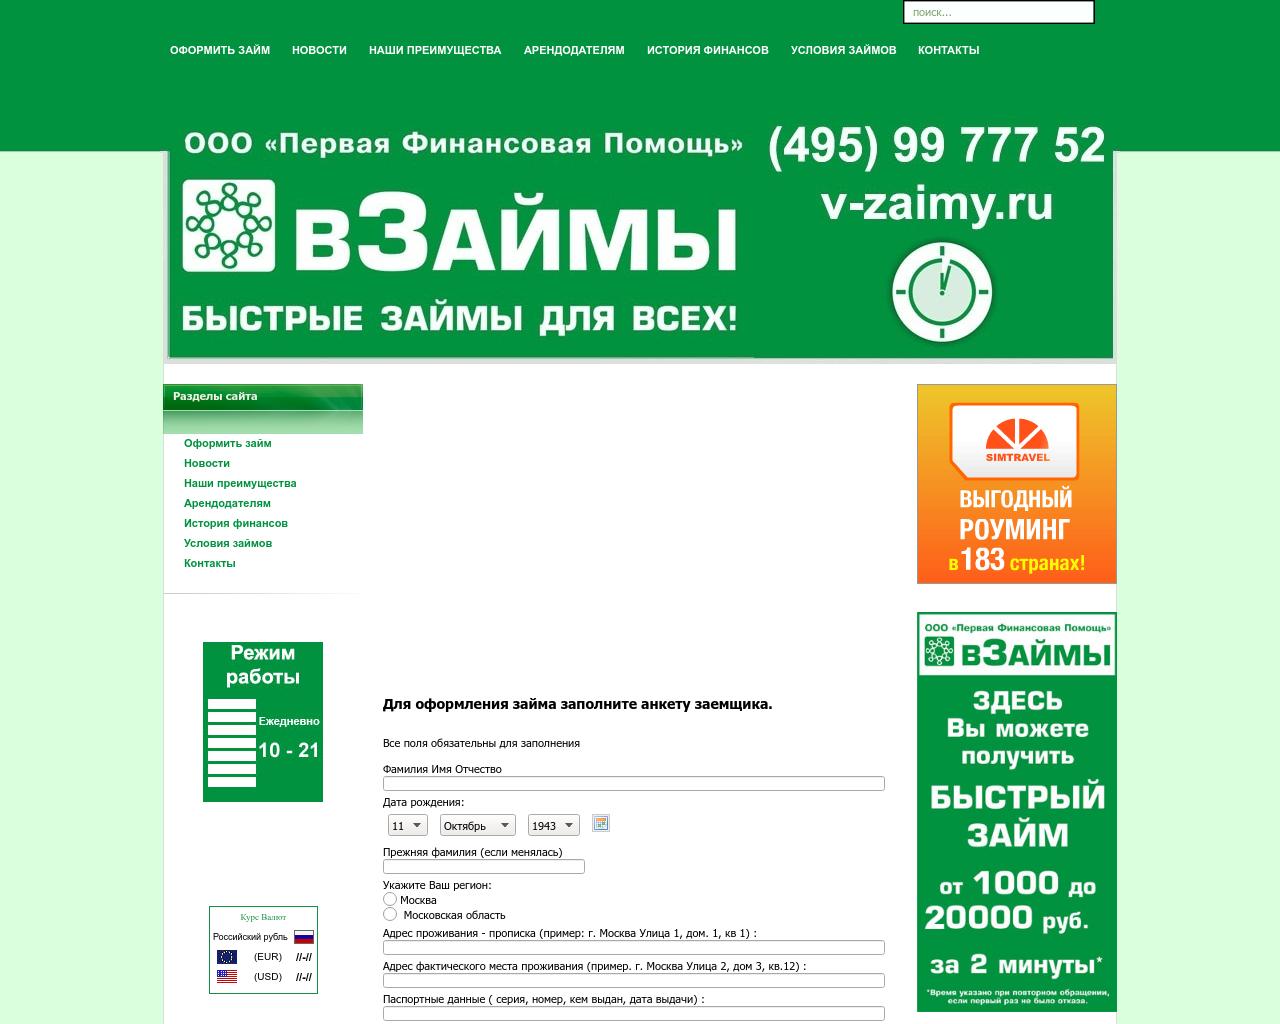 Изображение сайта v-zaimy.ru в разрешении 1280x1024